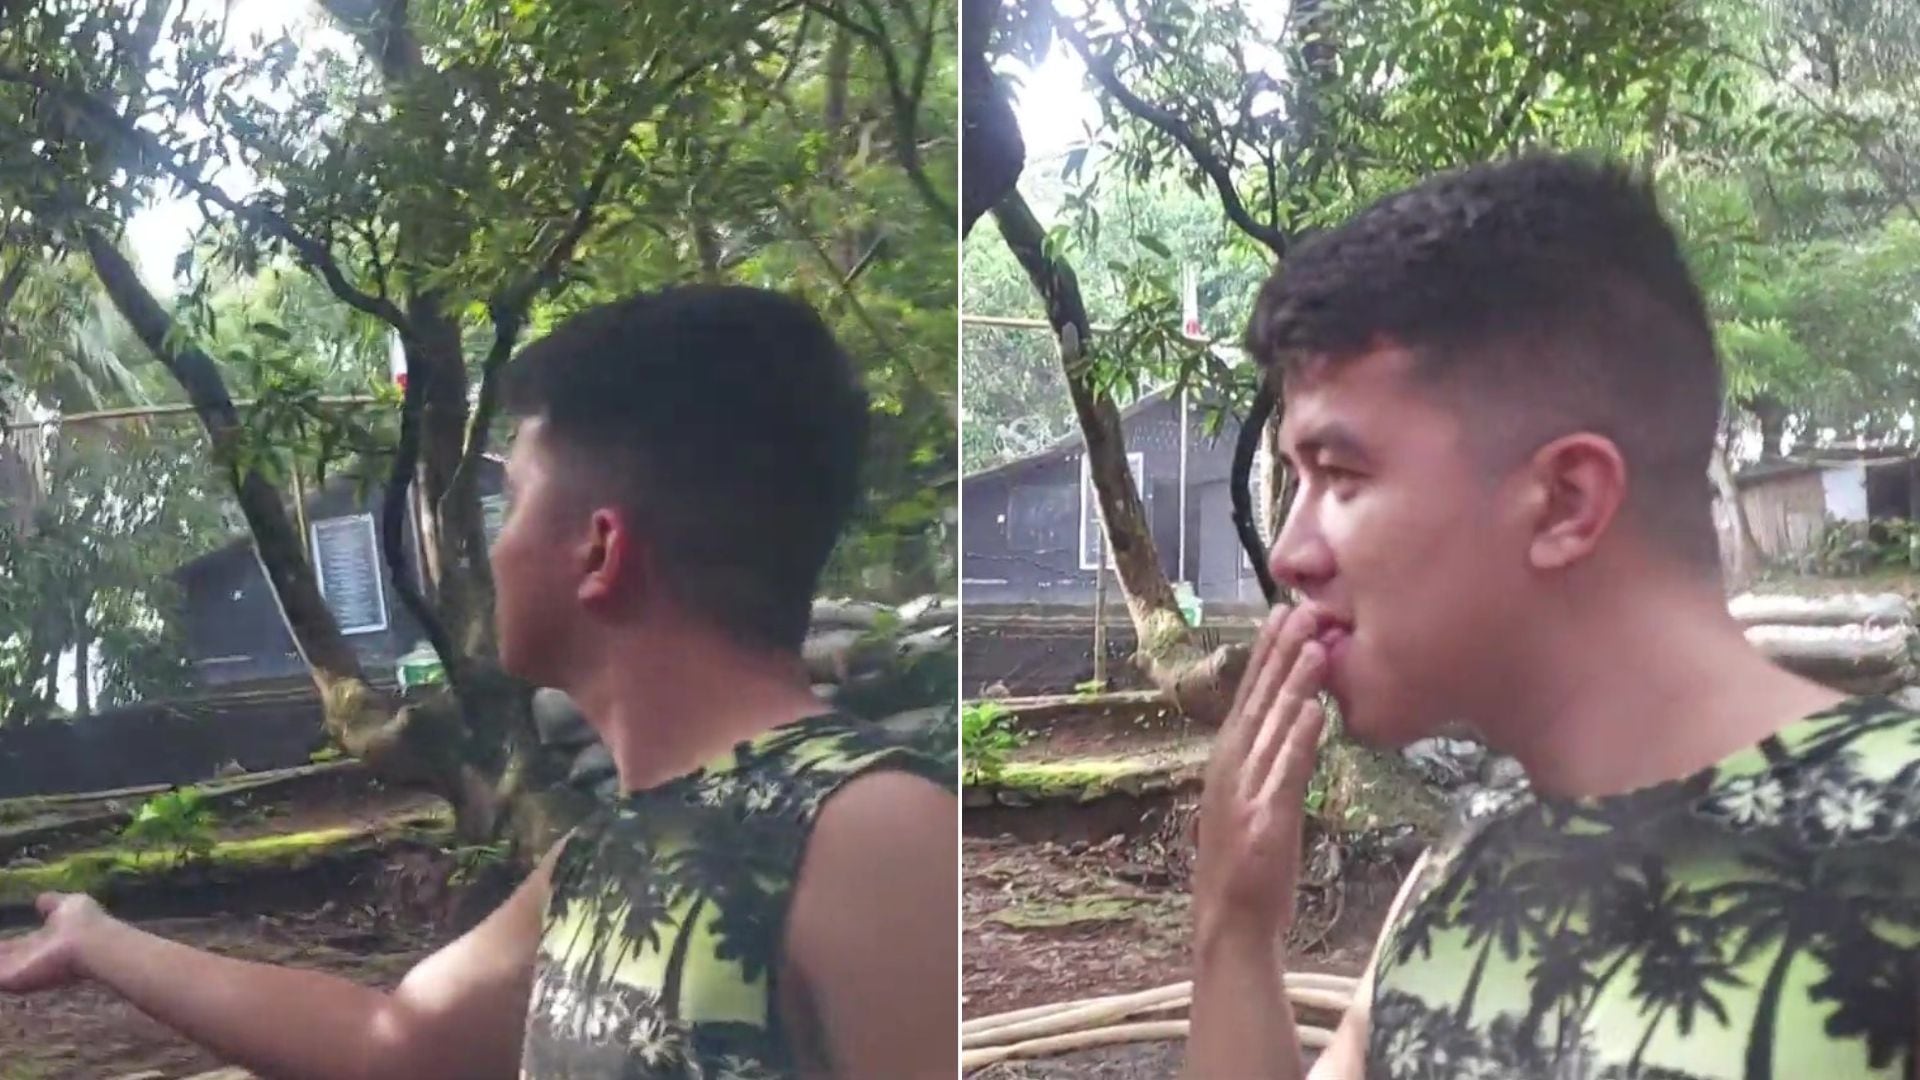 El hecho ocurrió en Filipinas y el joven dio su opinión sobre la orina de los grillos. (ViralHog)